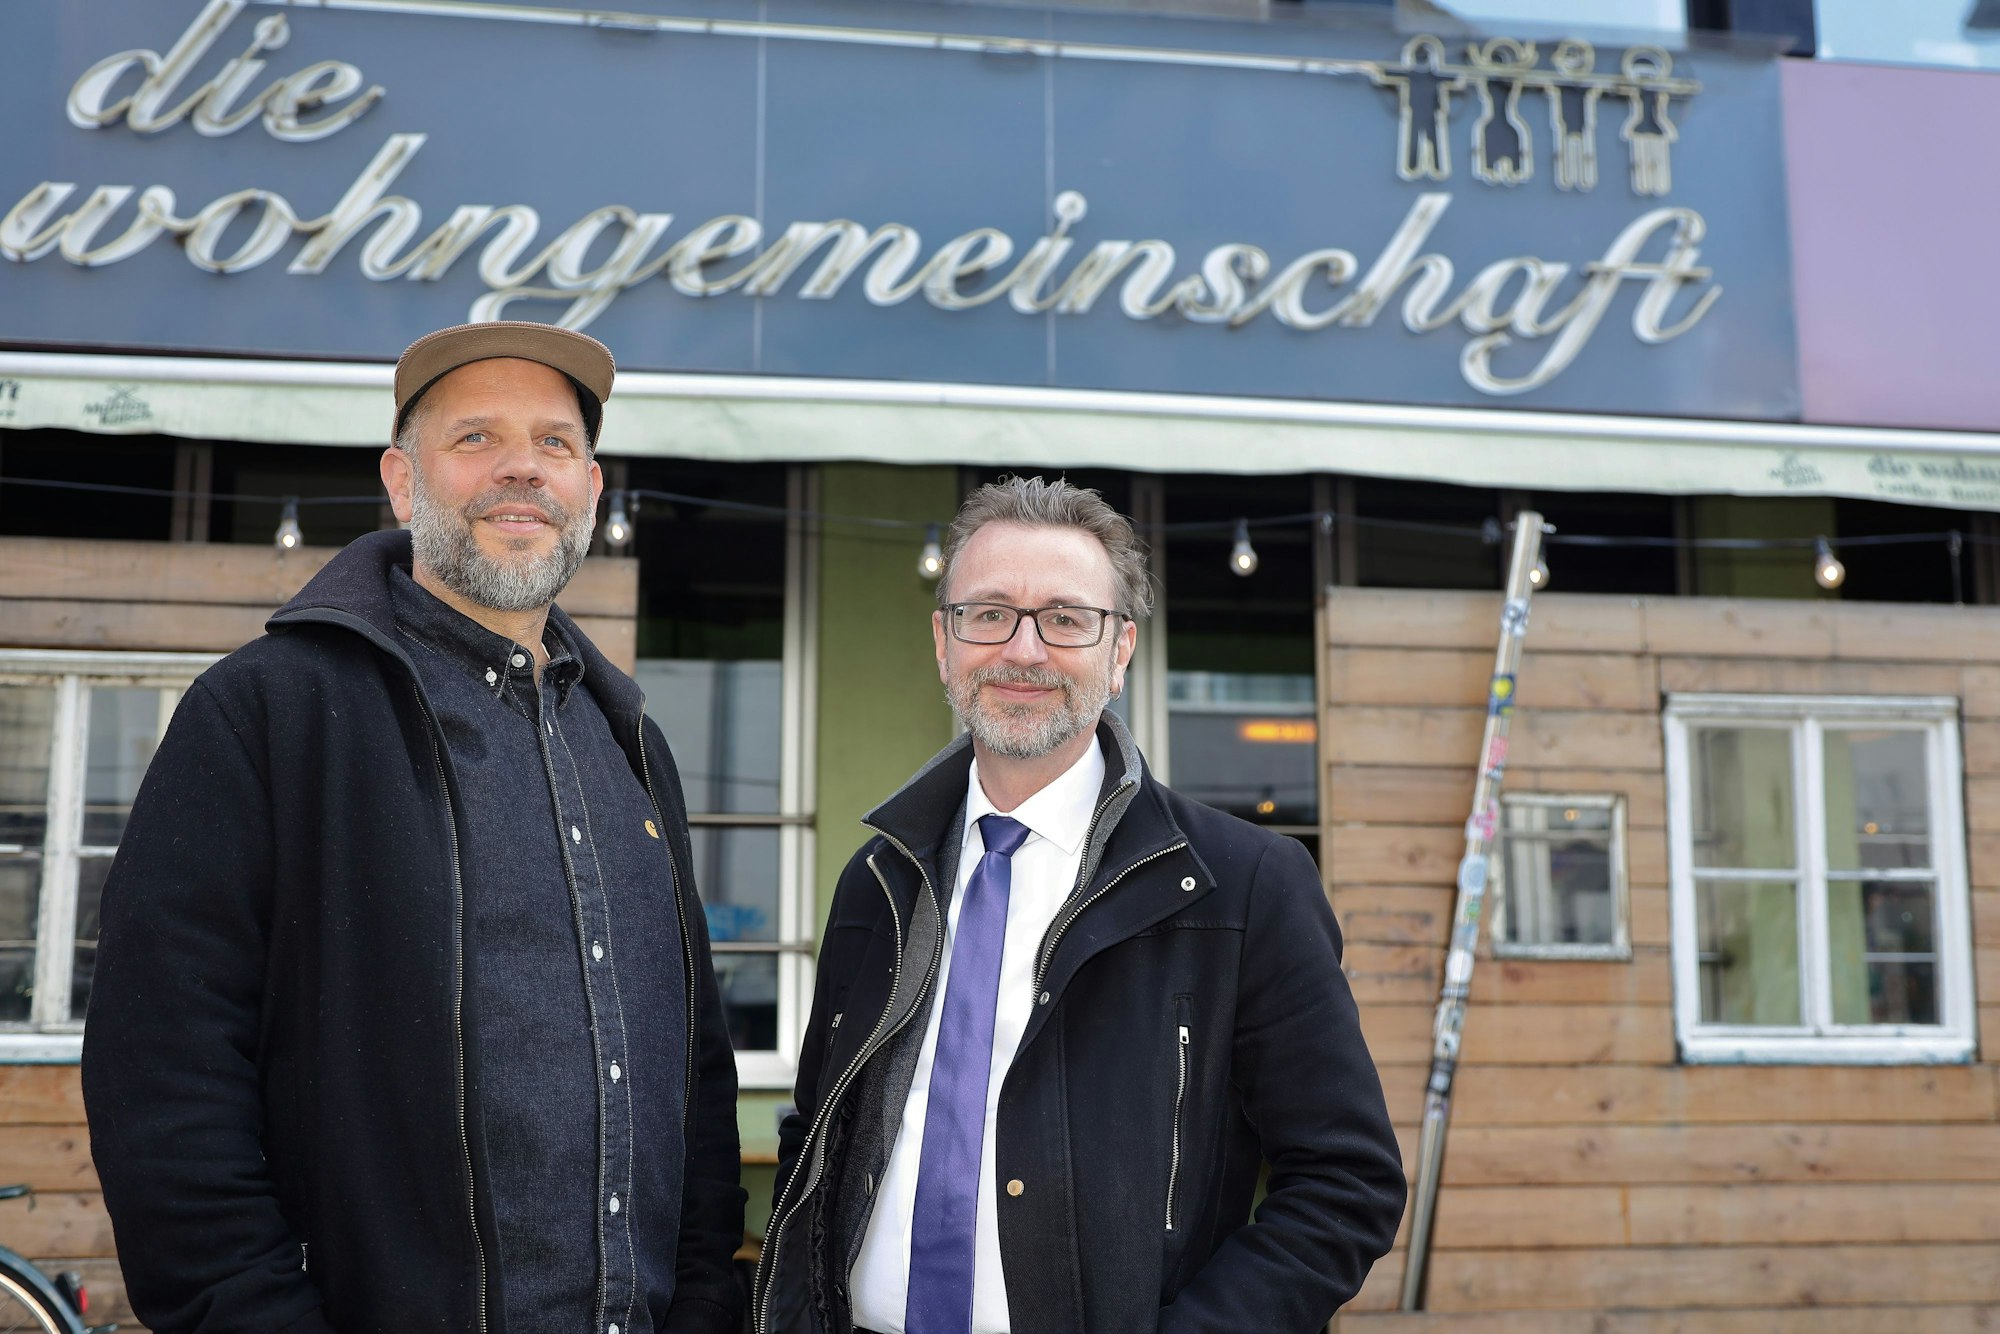 Jürgen Amann, Geschäftsführer von Köln-Tourismus, und Guido Bungart, Entwickler der App und Mitgründer der „Wohngemeinschaft“ an der Richard-Wagner-Straße vor dem Eingang der „Wohngemeinschaft“